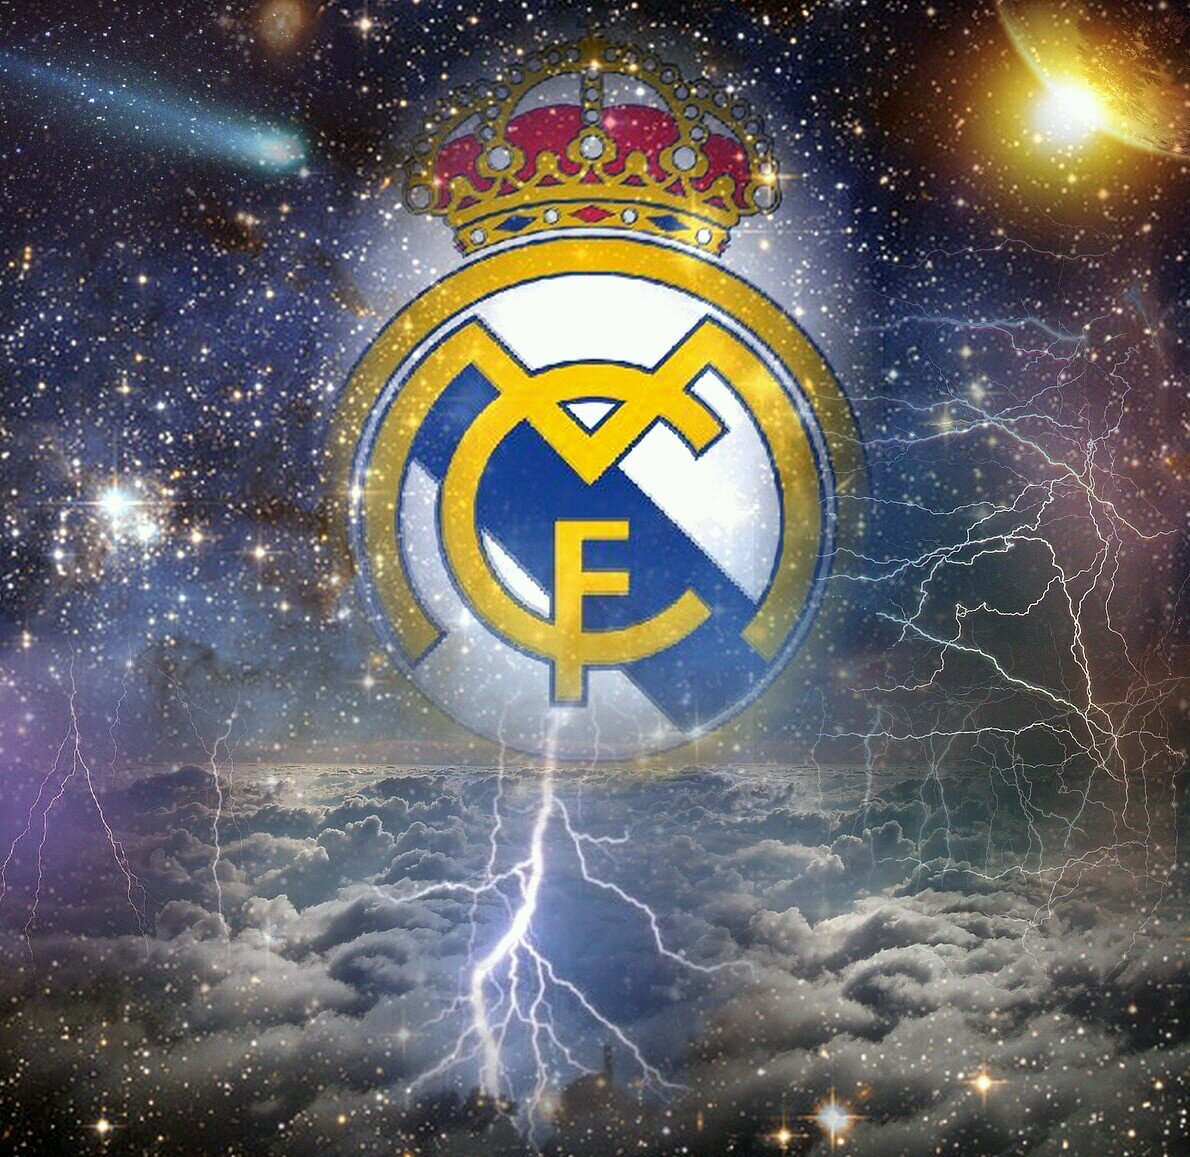 @RealMadridFans ¡Hala Madrid!